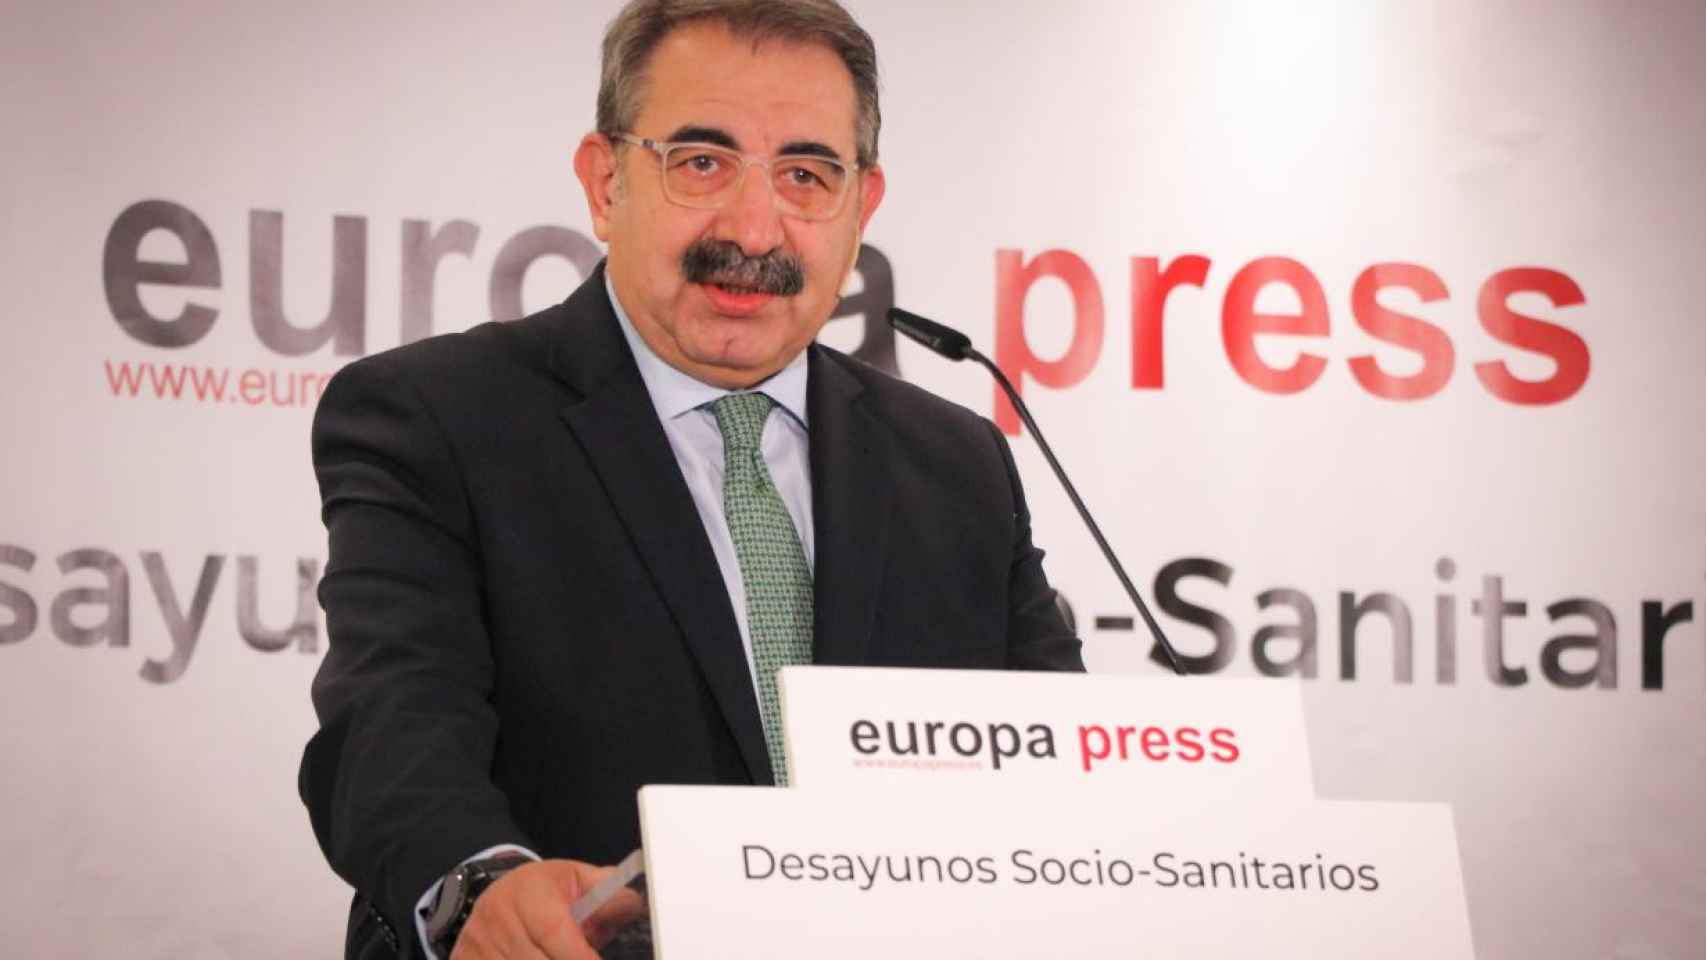 Jesús Fernández Sanz, consejero de Sanidad, este lunes en un foro de Europa Press